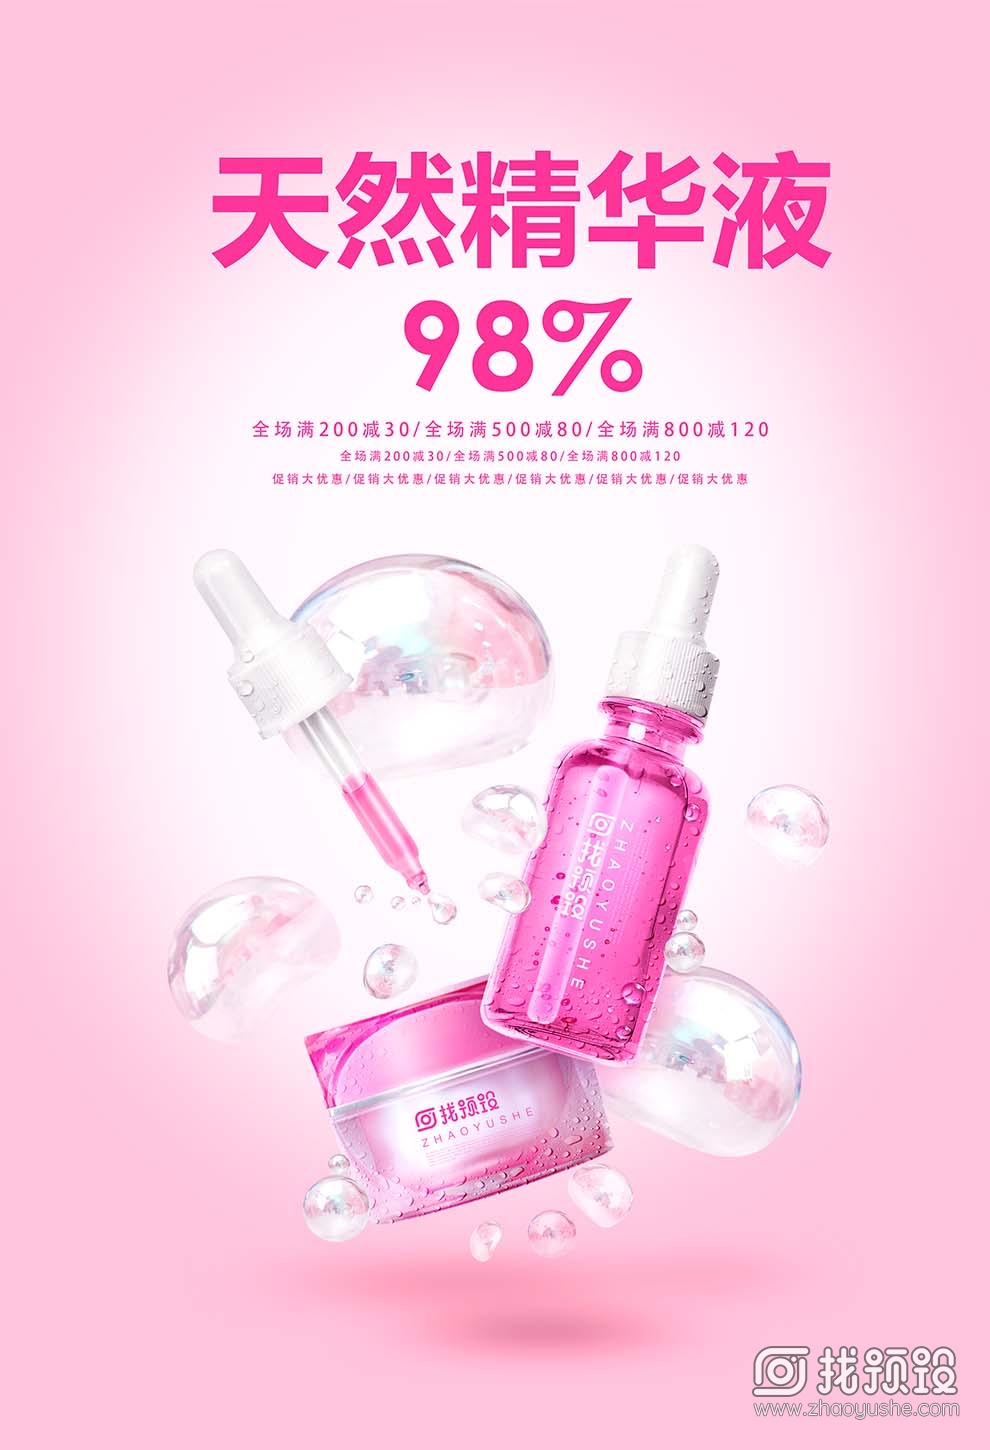 找预设网粉色化妆品海报设计psd2023年3月29日 2023010910294344